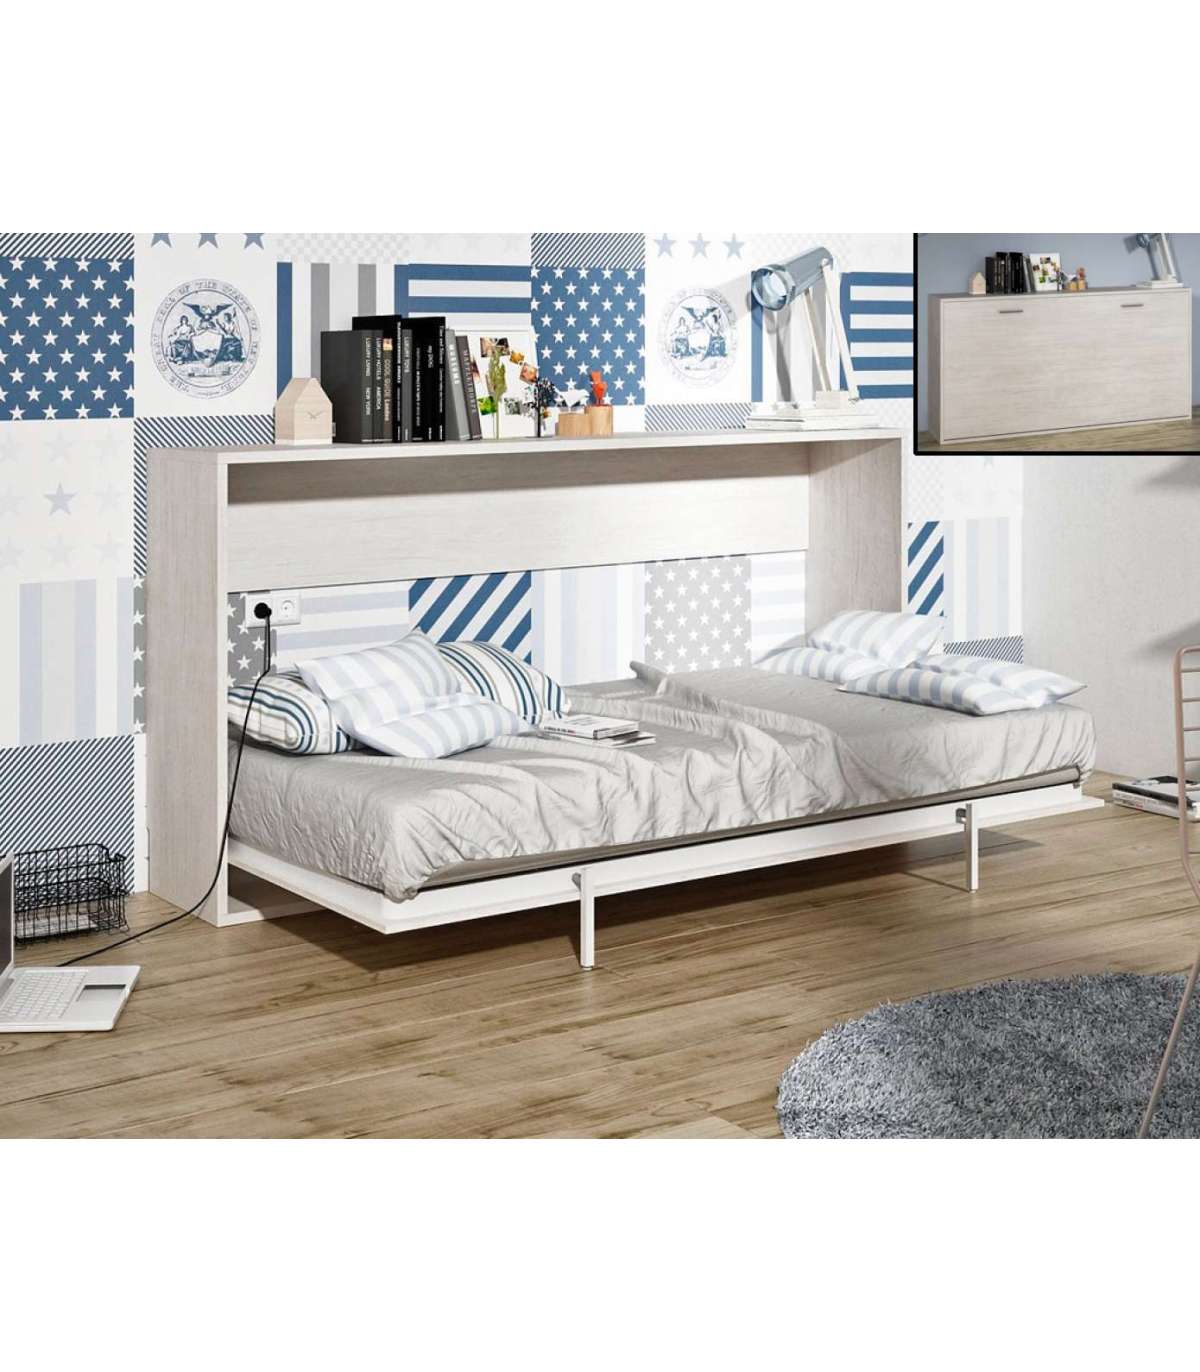 Mueble cama plegable de 90 cm. en color Cerezo o Blanco